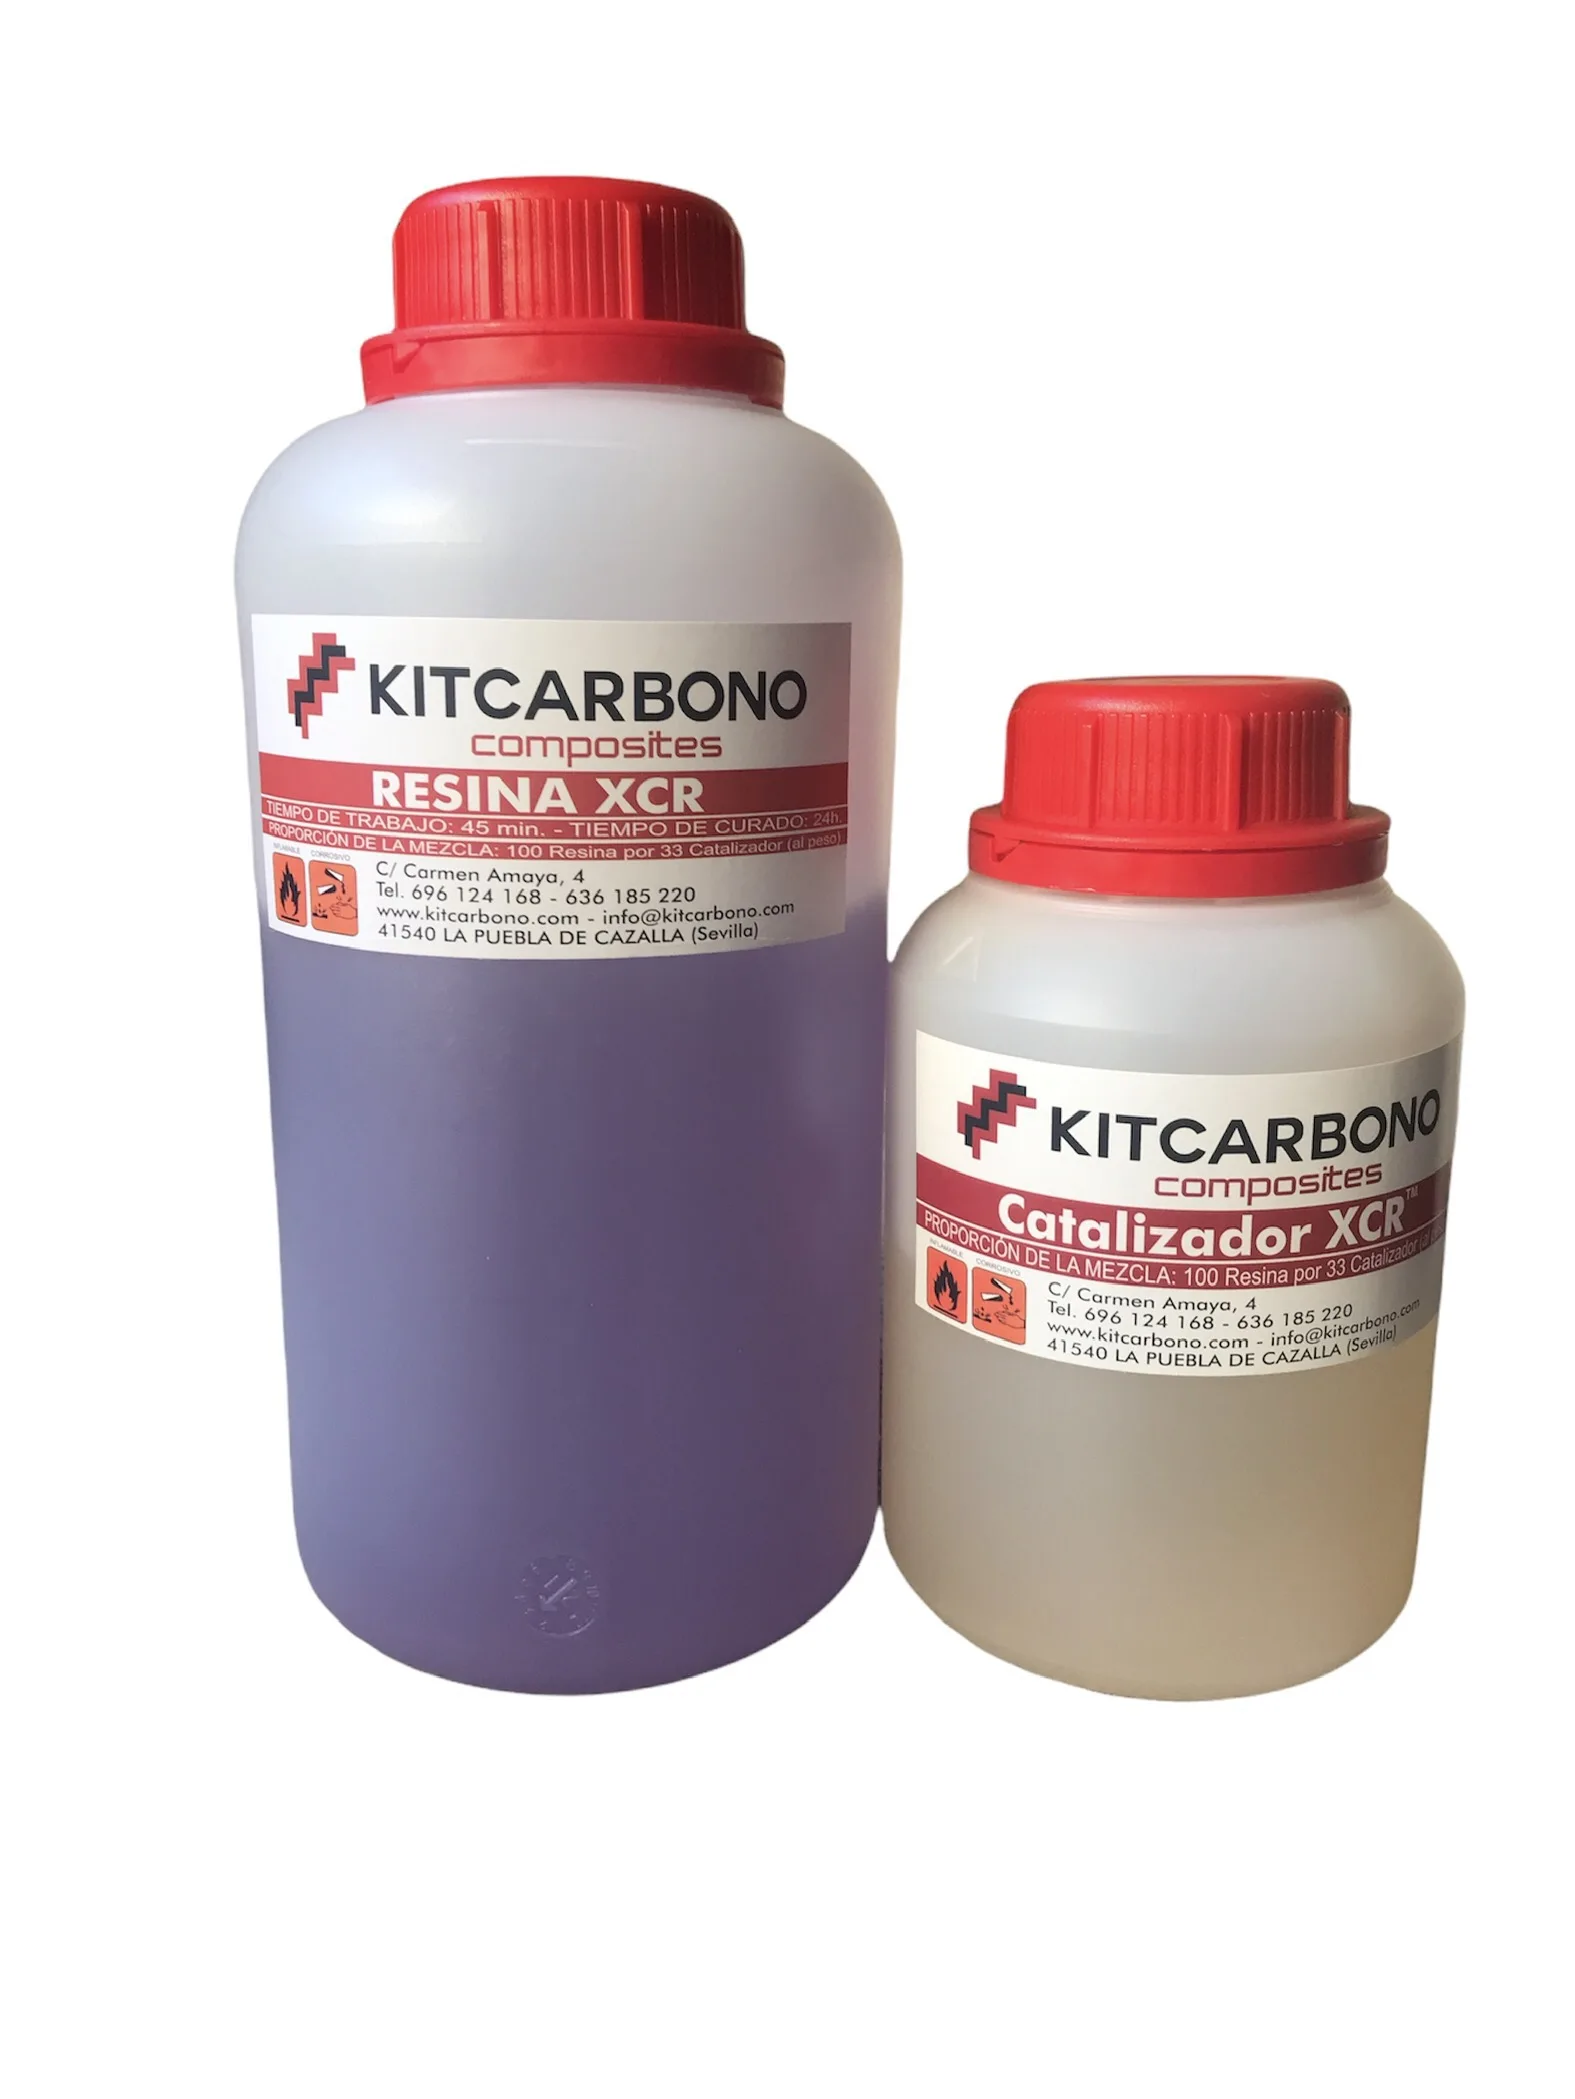 Kitcarbon clear resina epossidica glassclear UV XCR Pro kit 1kg,  artigianato, gioielli, colla forte, colla epossidica, legno, fibra di  carbonio - AliExpress